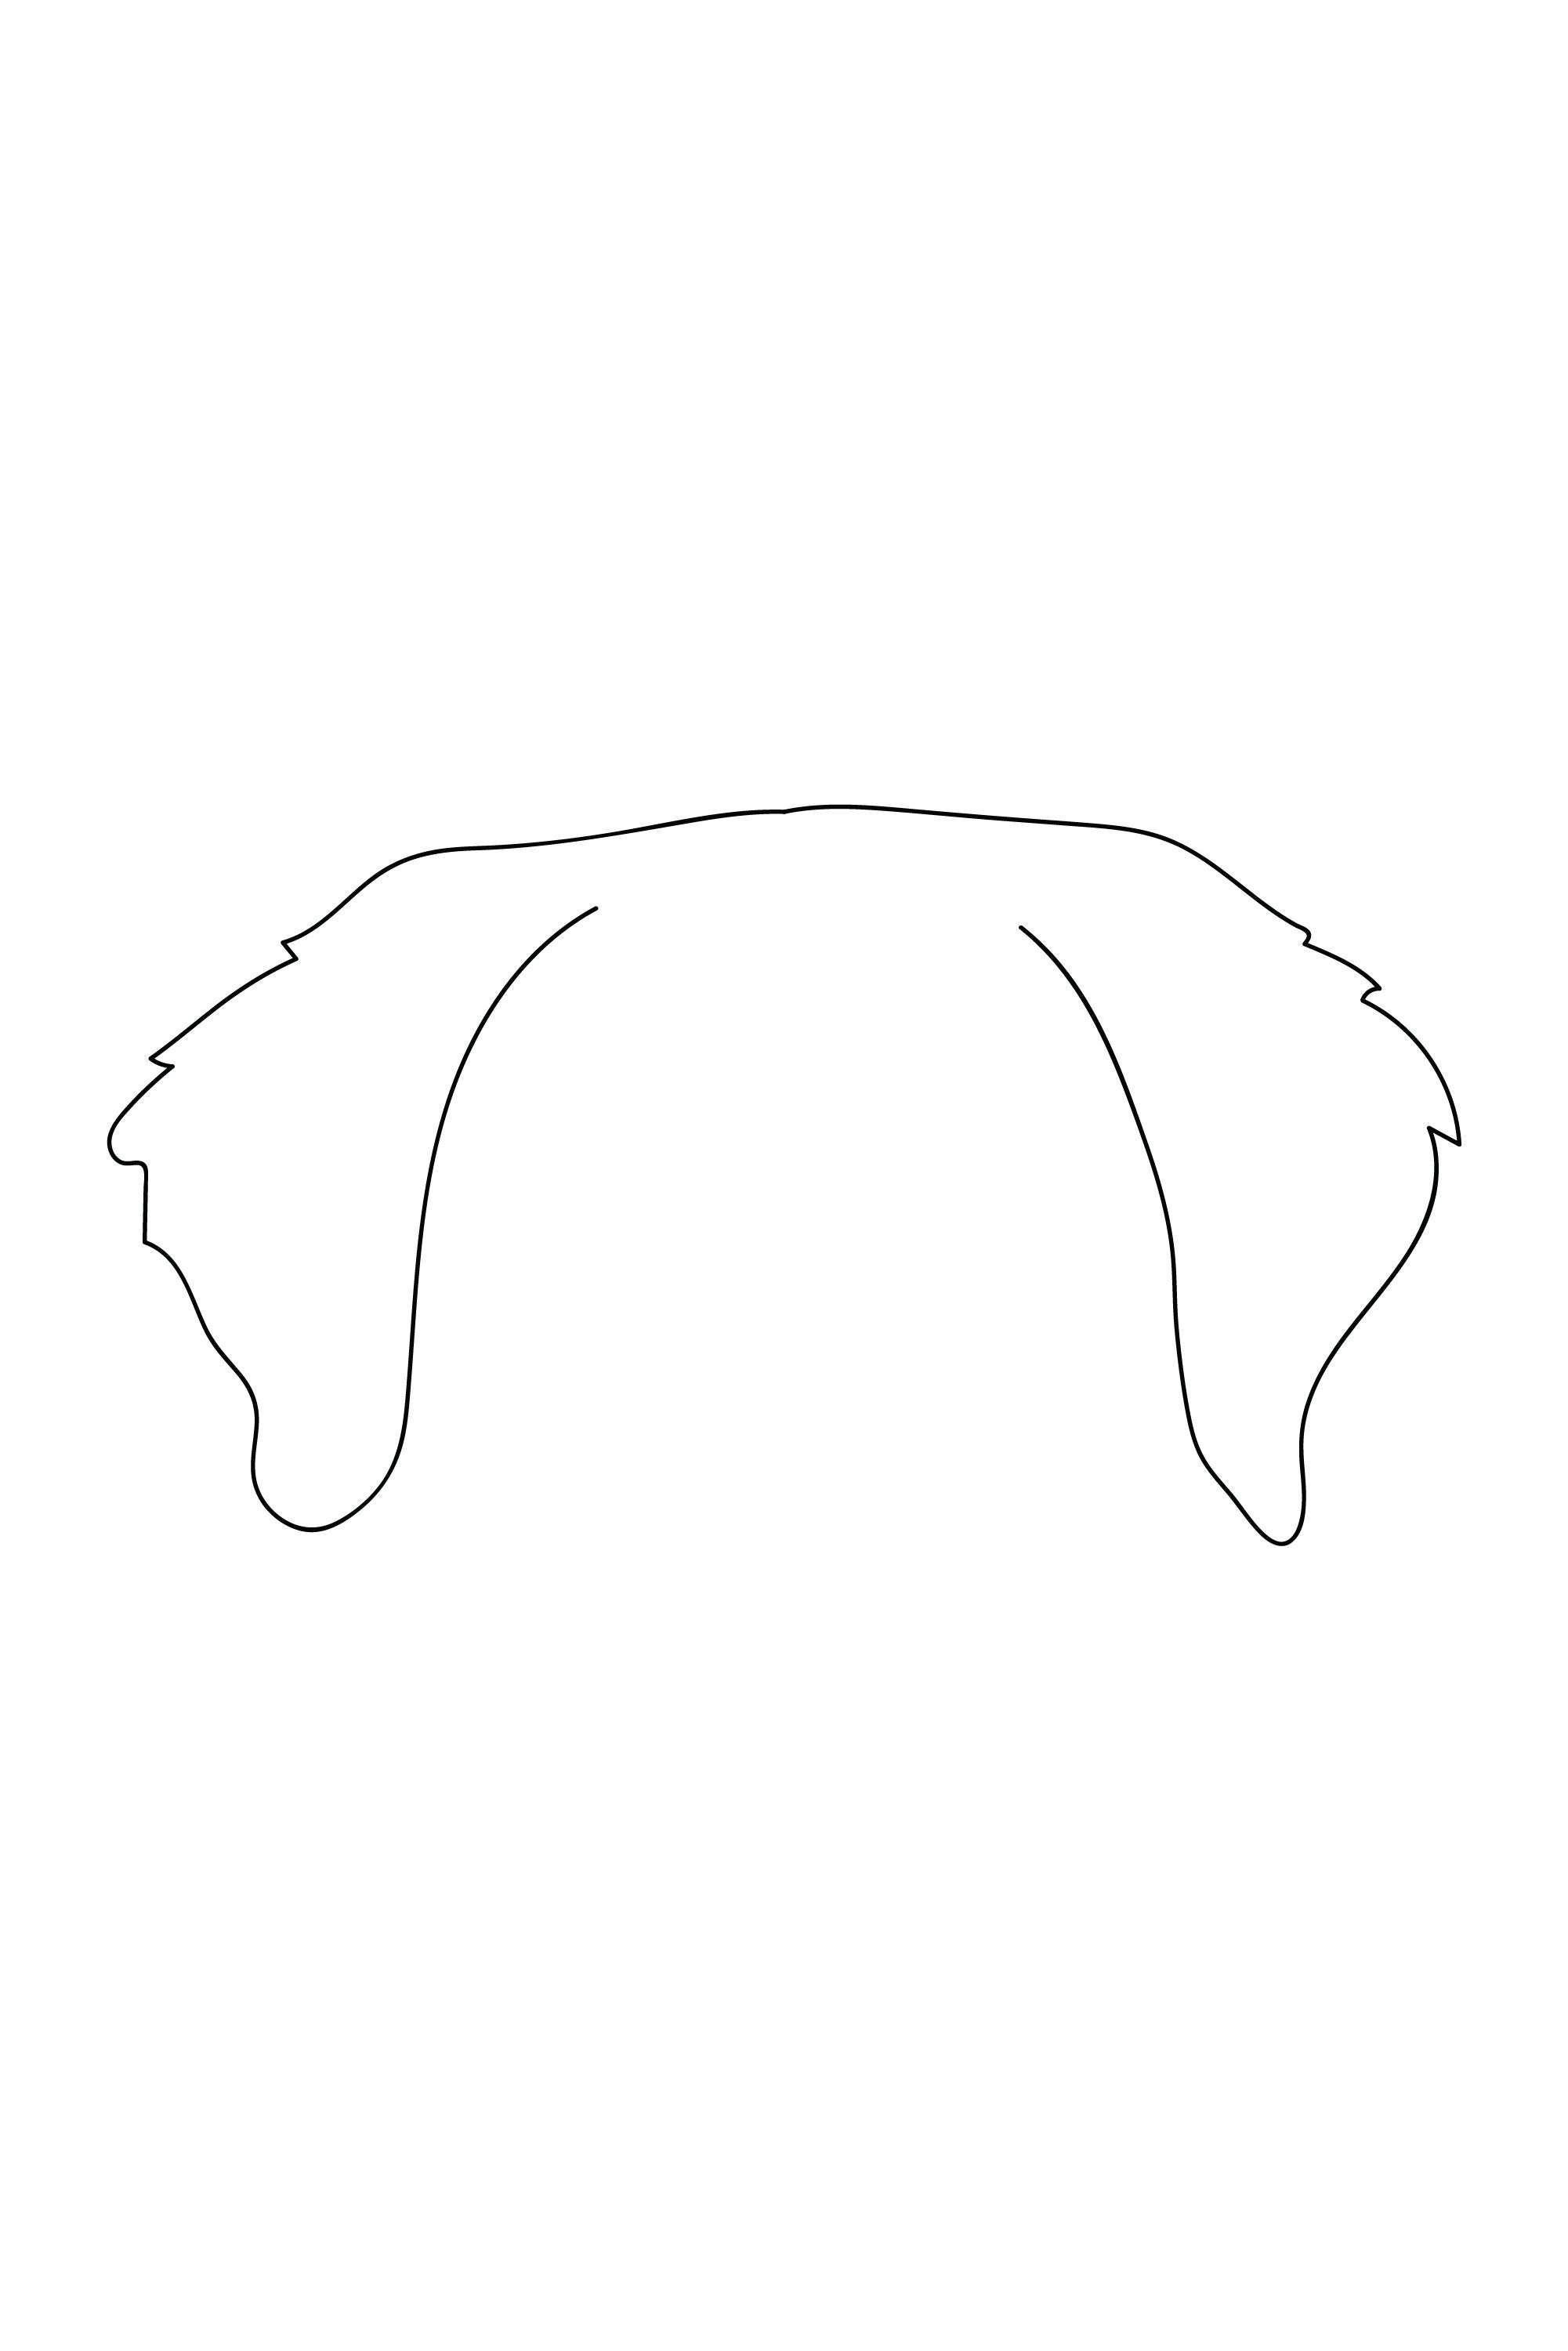 Dog Ear Outline Labrador Digital File Dog Ear Line Art - Etsy